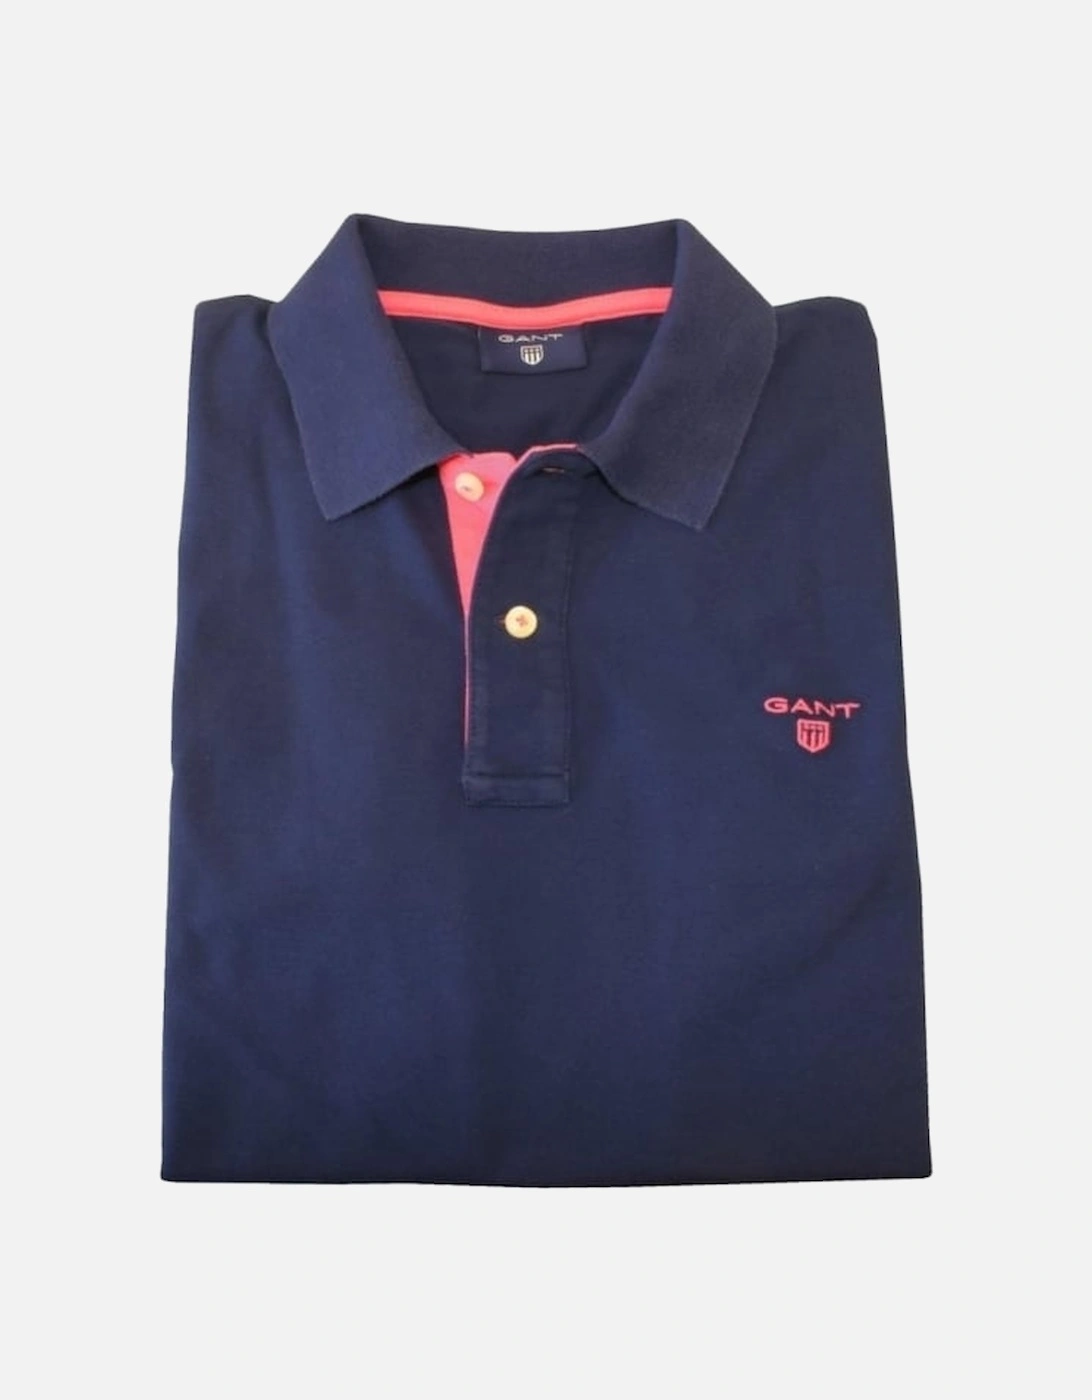 Contrast Collar Pique Rugger Polo Shirt, Navy/Pink